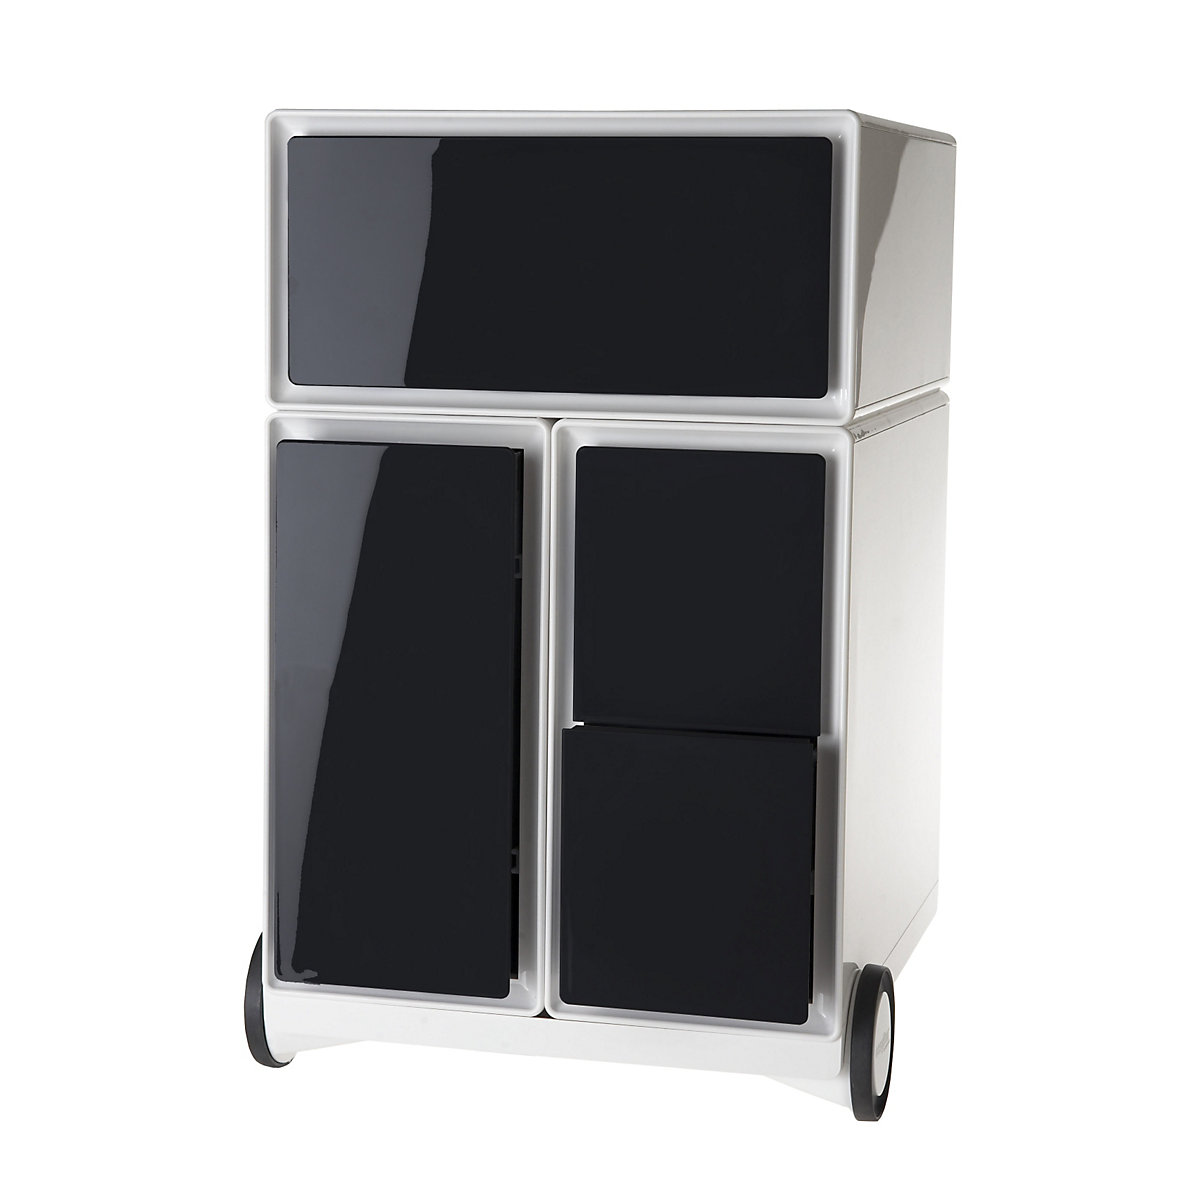 Pojízdný kontejner easyBox® – Paperflow, 1 zásuvka, 1 výsuv pro závěsné složky, 2 výsuvy pro CD, bílá / černá-13